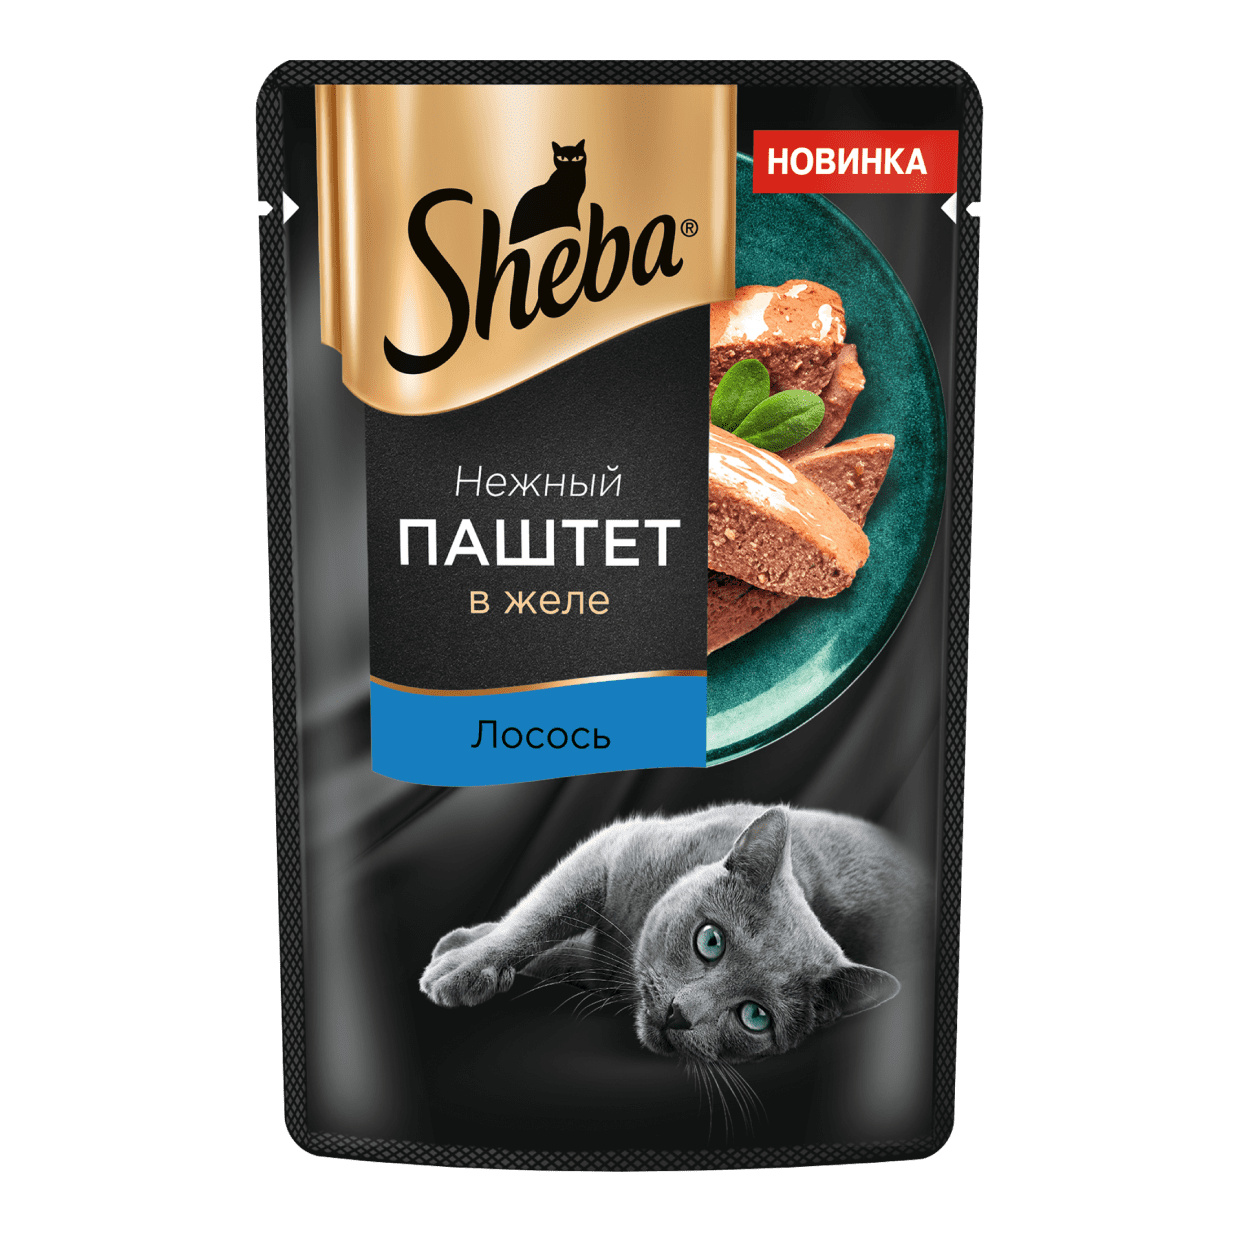 Sheba Sheba влажный корм для кошек Нежный паштет в желе, с лососем (75 г)